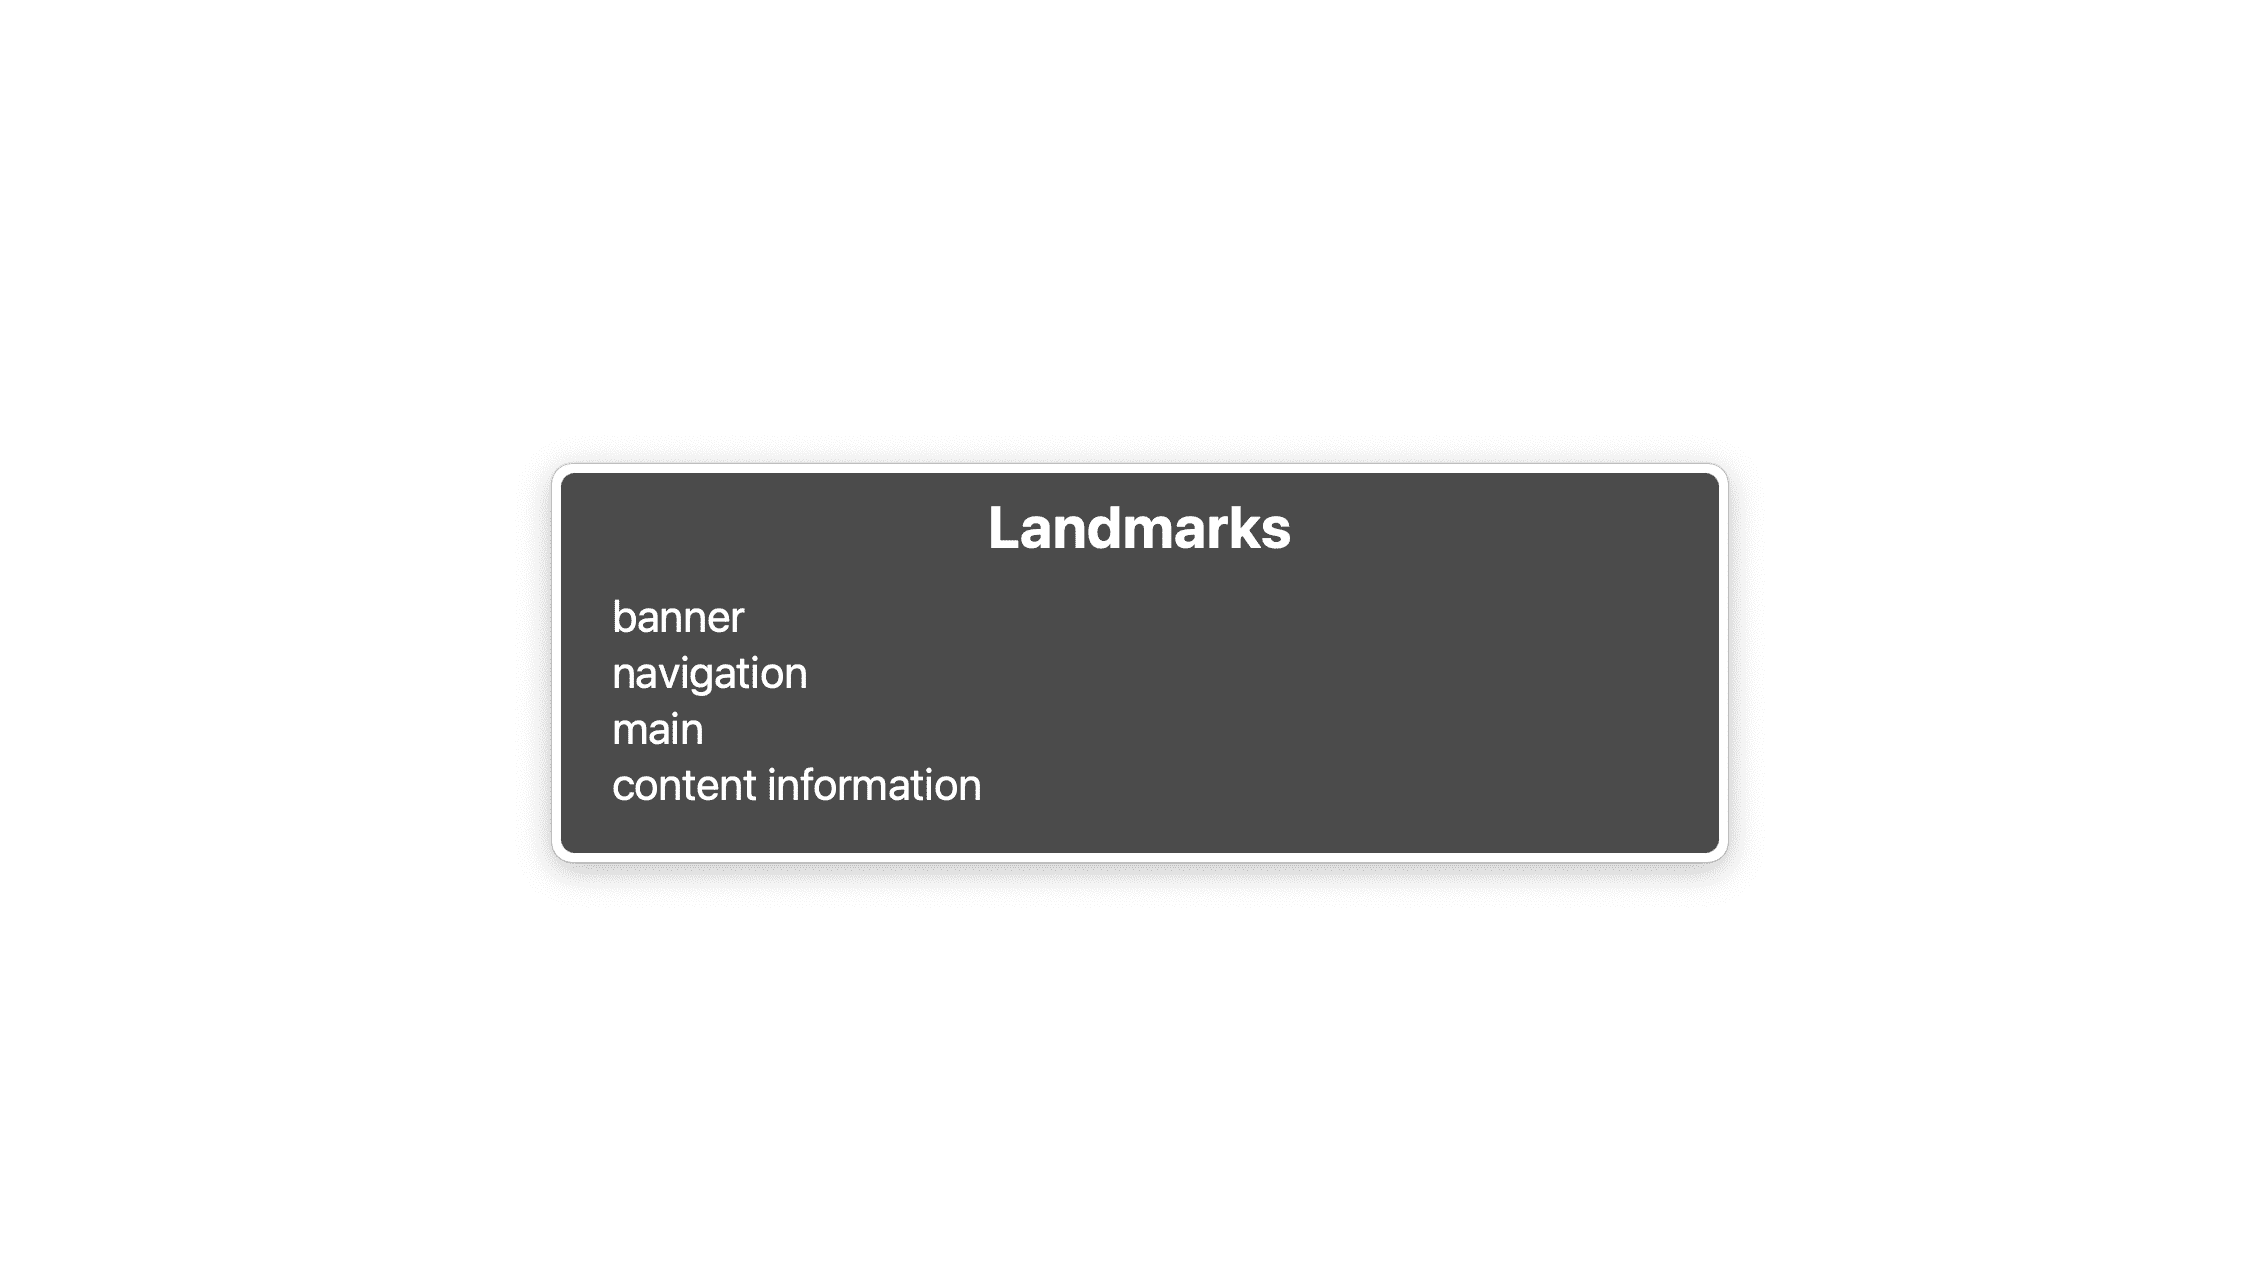 चार लैंडमार्क की सूची: बैनर, नेविगेशन, मुख्य, कॉन्टेंट की जानकारी.